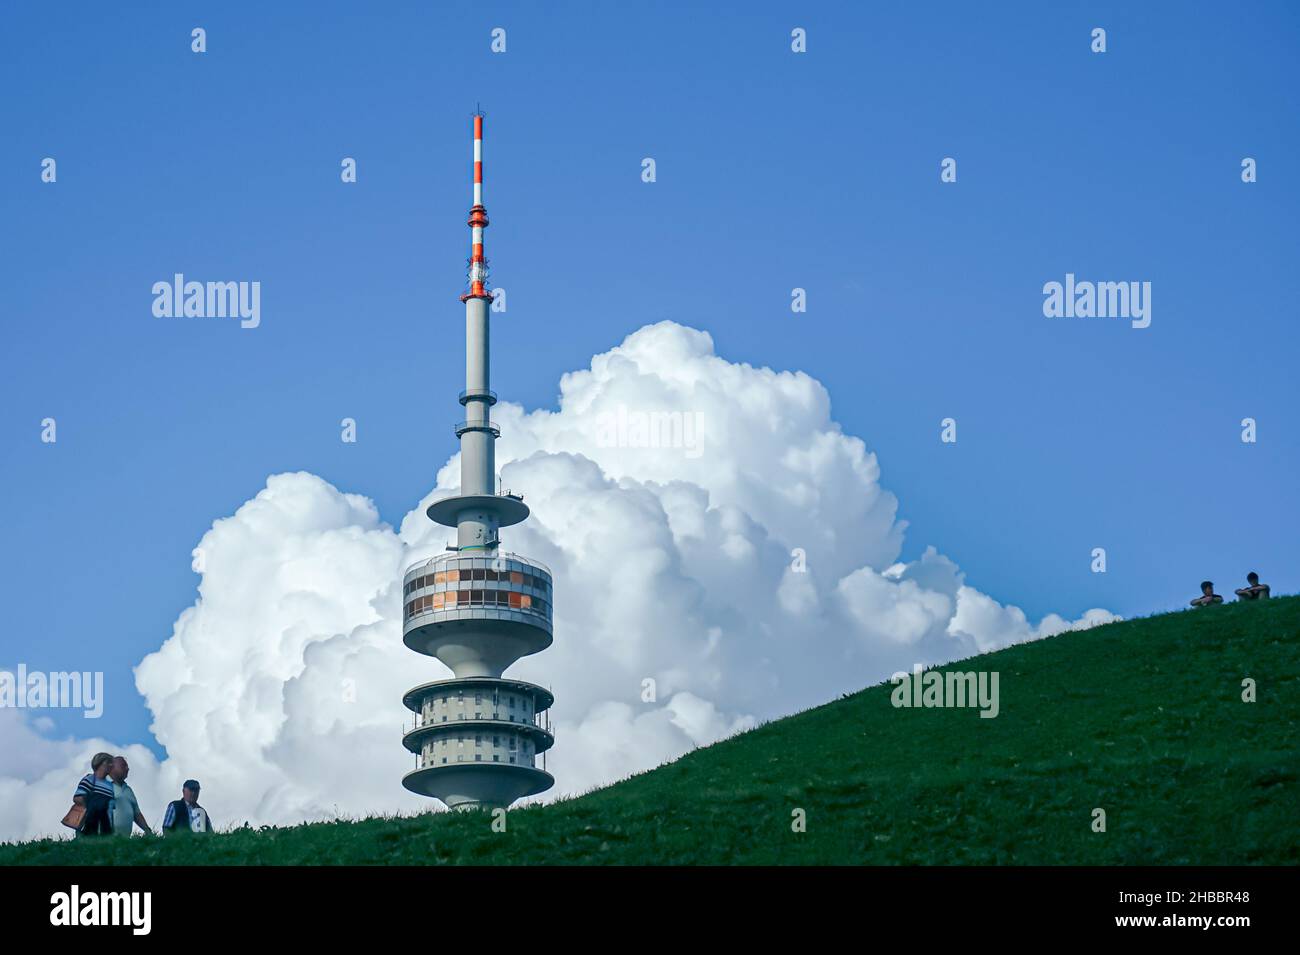 Un couple et un homme marchent sur une colline près de la Tour Olympique de Munich.Deux jeunes hommes s'assoient en haut à droite.Grands nuages dans le ciel bleu. Banque D'Images